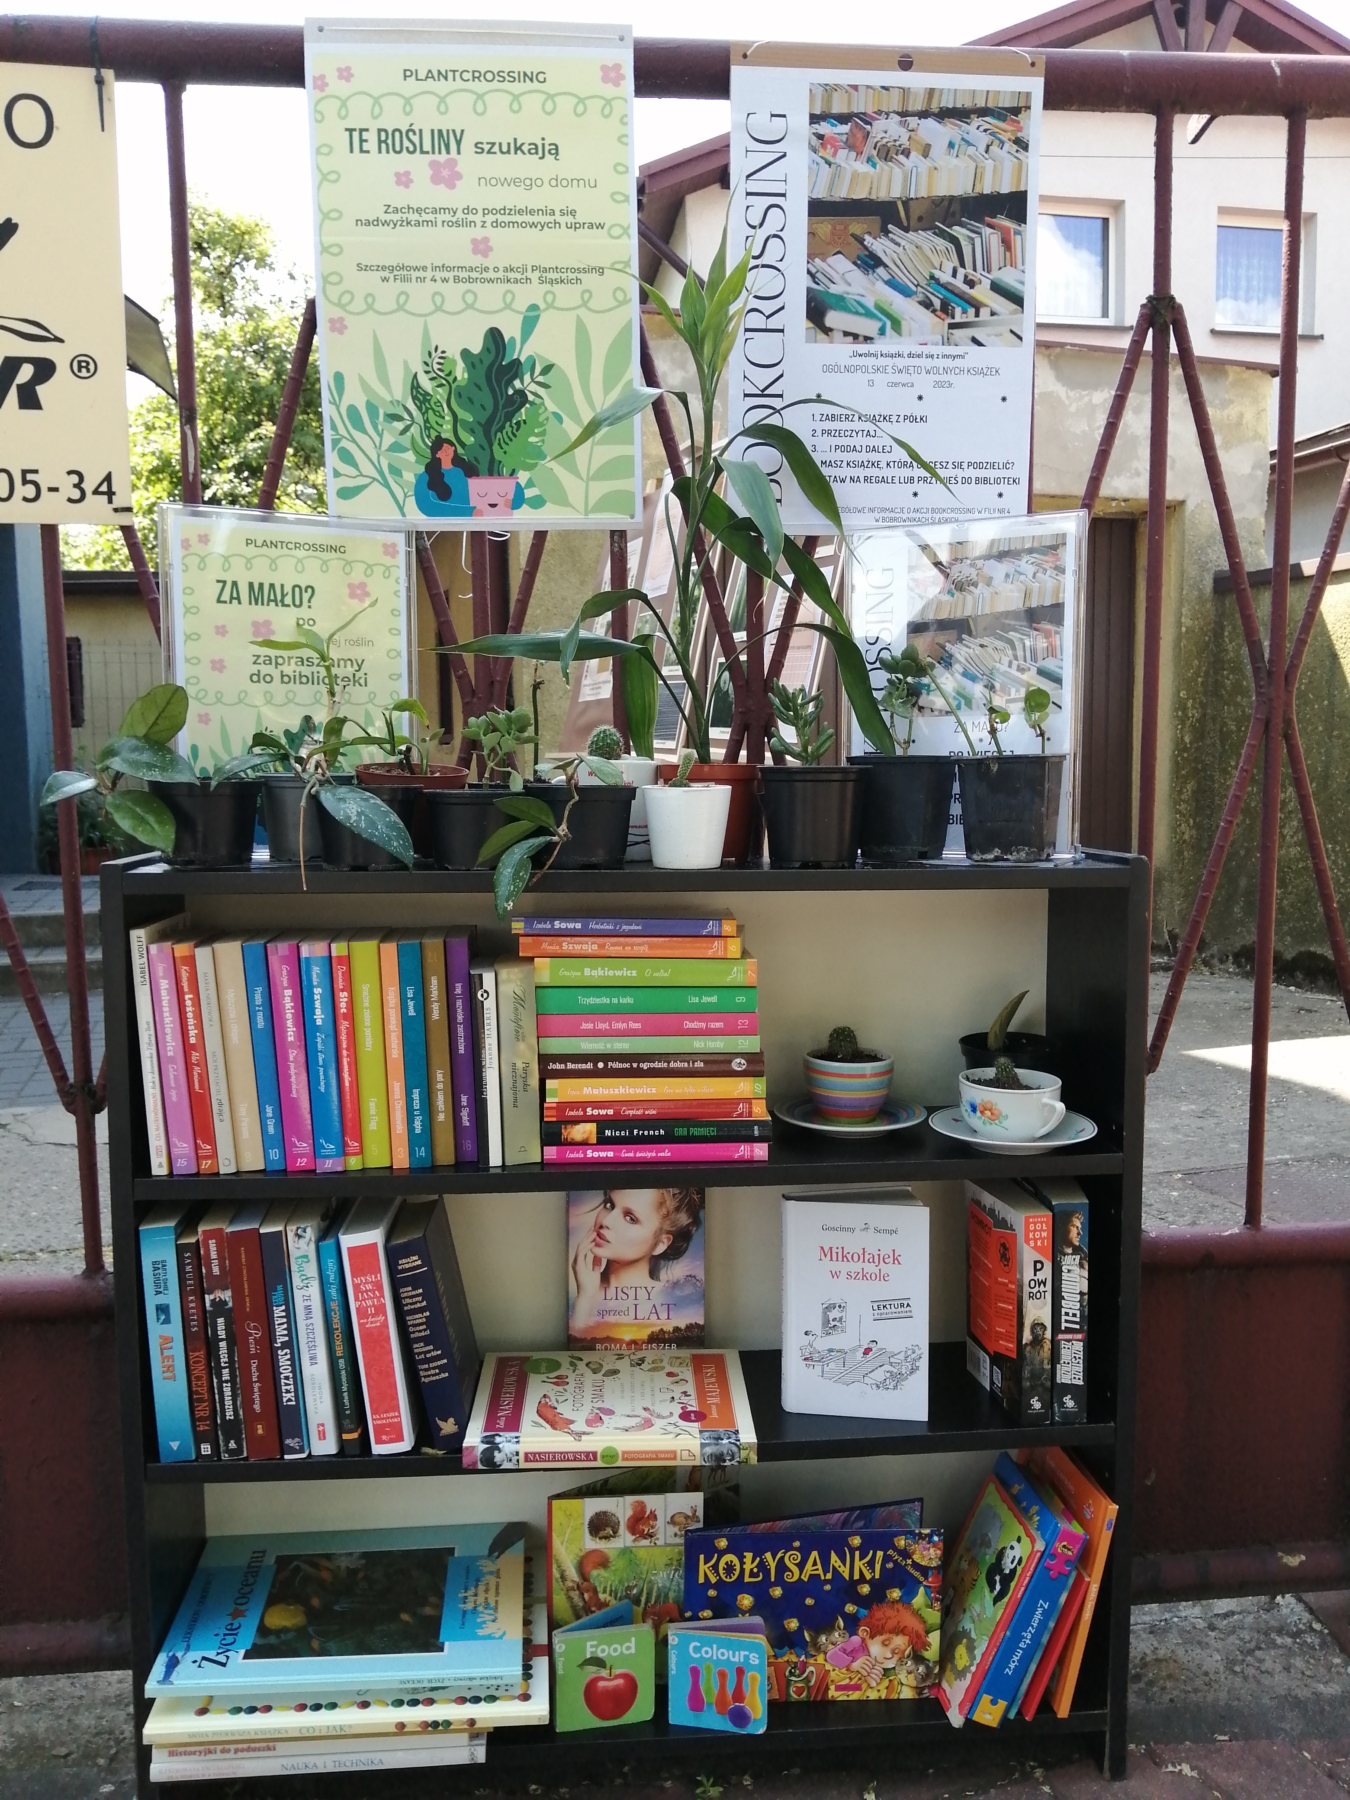 Książki i rośliny przeznaczone na bookcrossing i plantcrossing